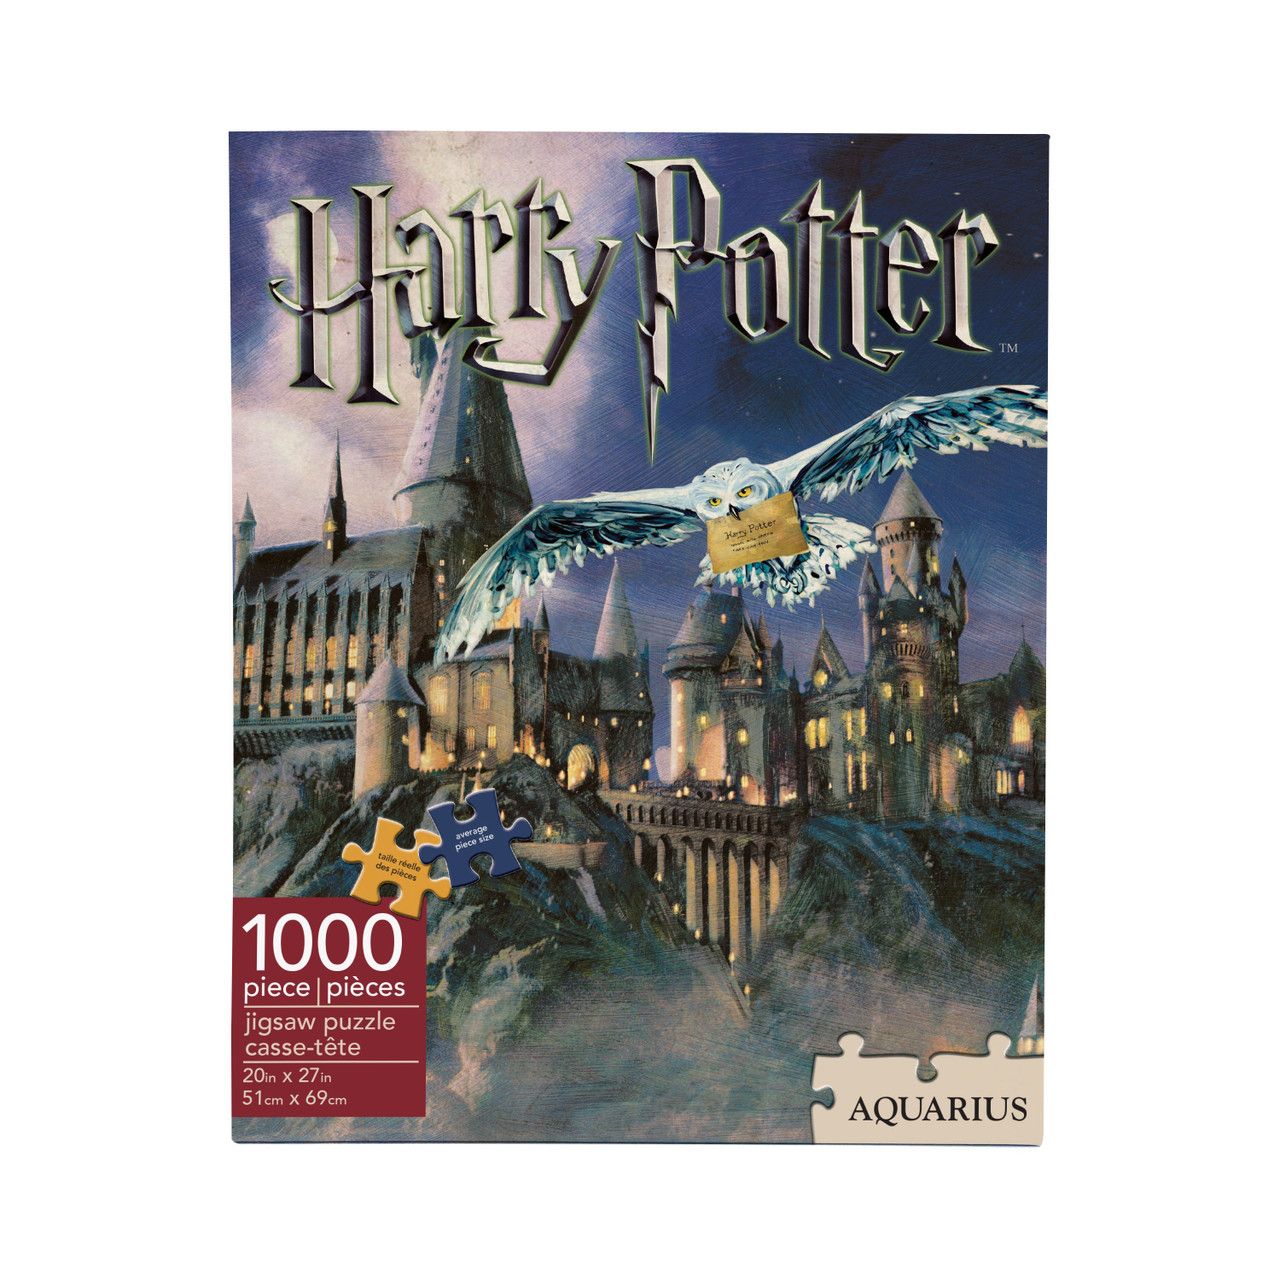 NMR Hogwarts Harry Potter 1000 Piece Puzzle - PUZZLES